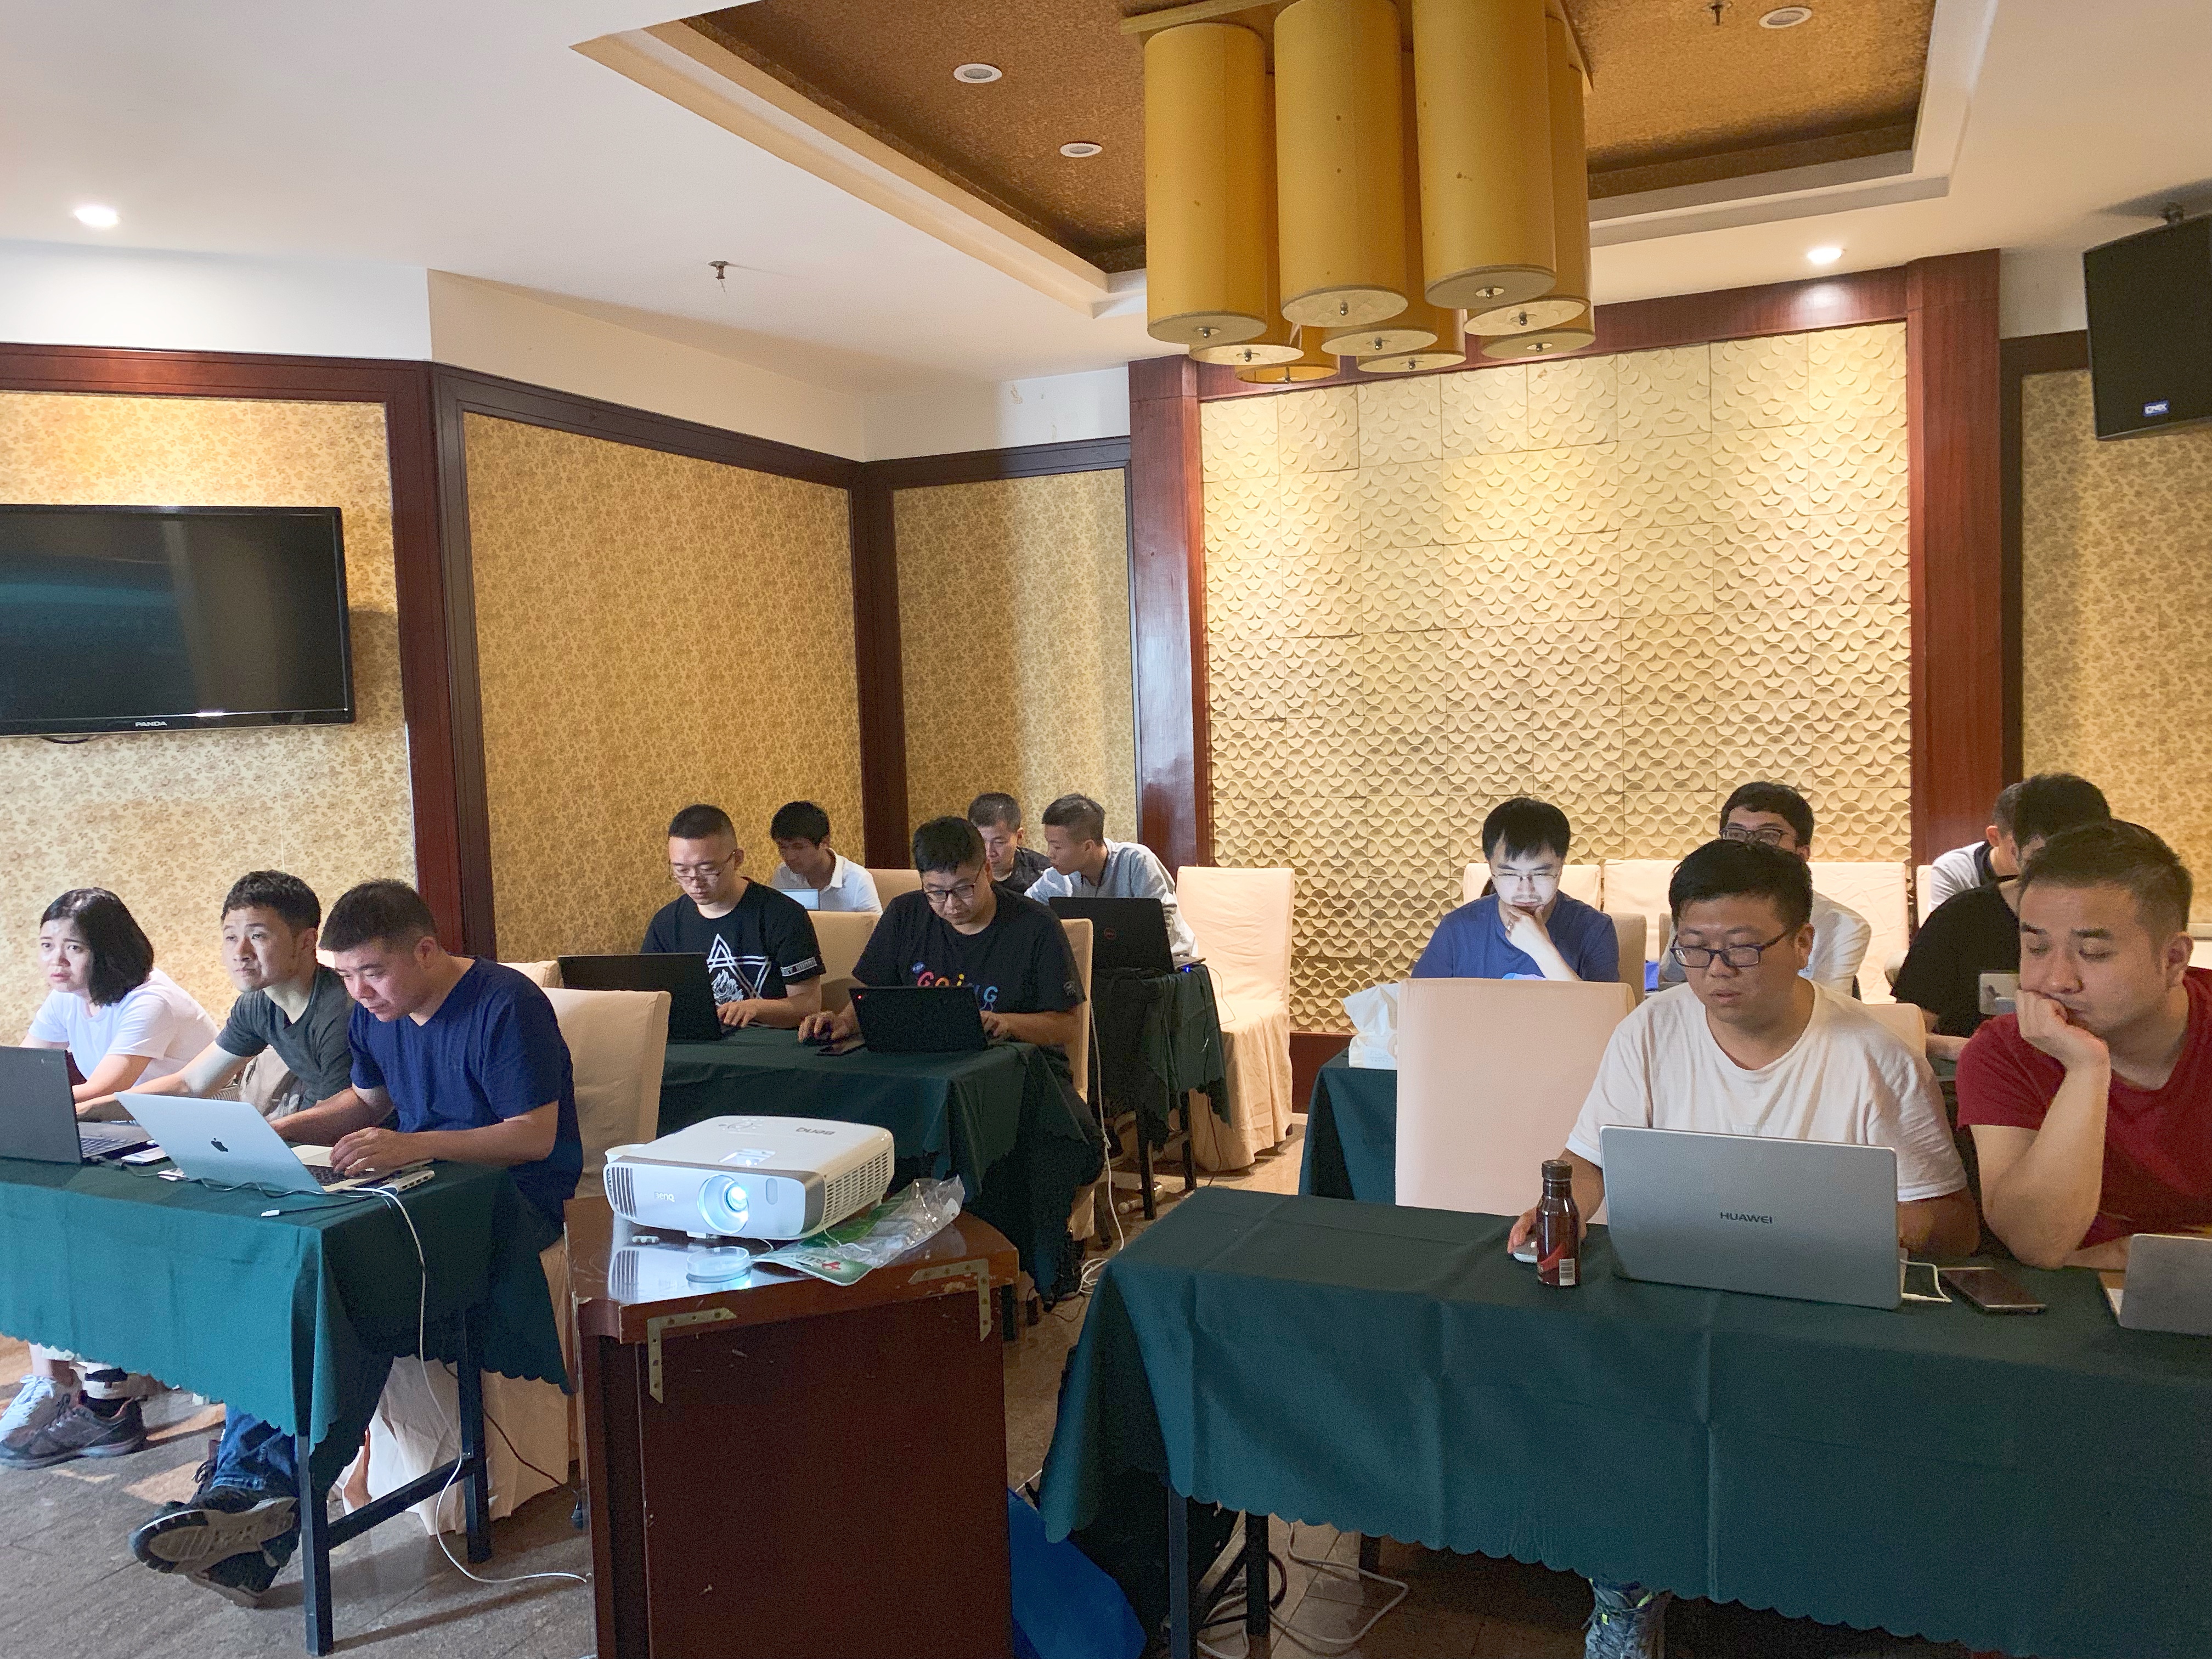 iS-RPA 高级设计师培训 - 南京 20190712 班 - 培训完成